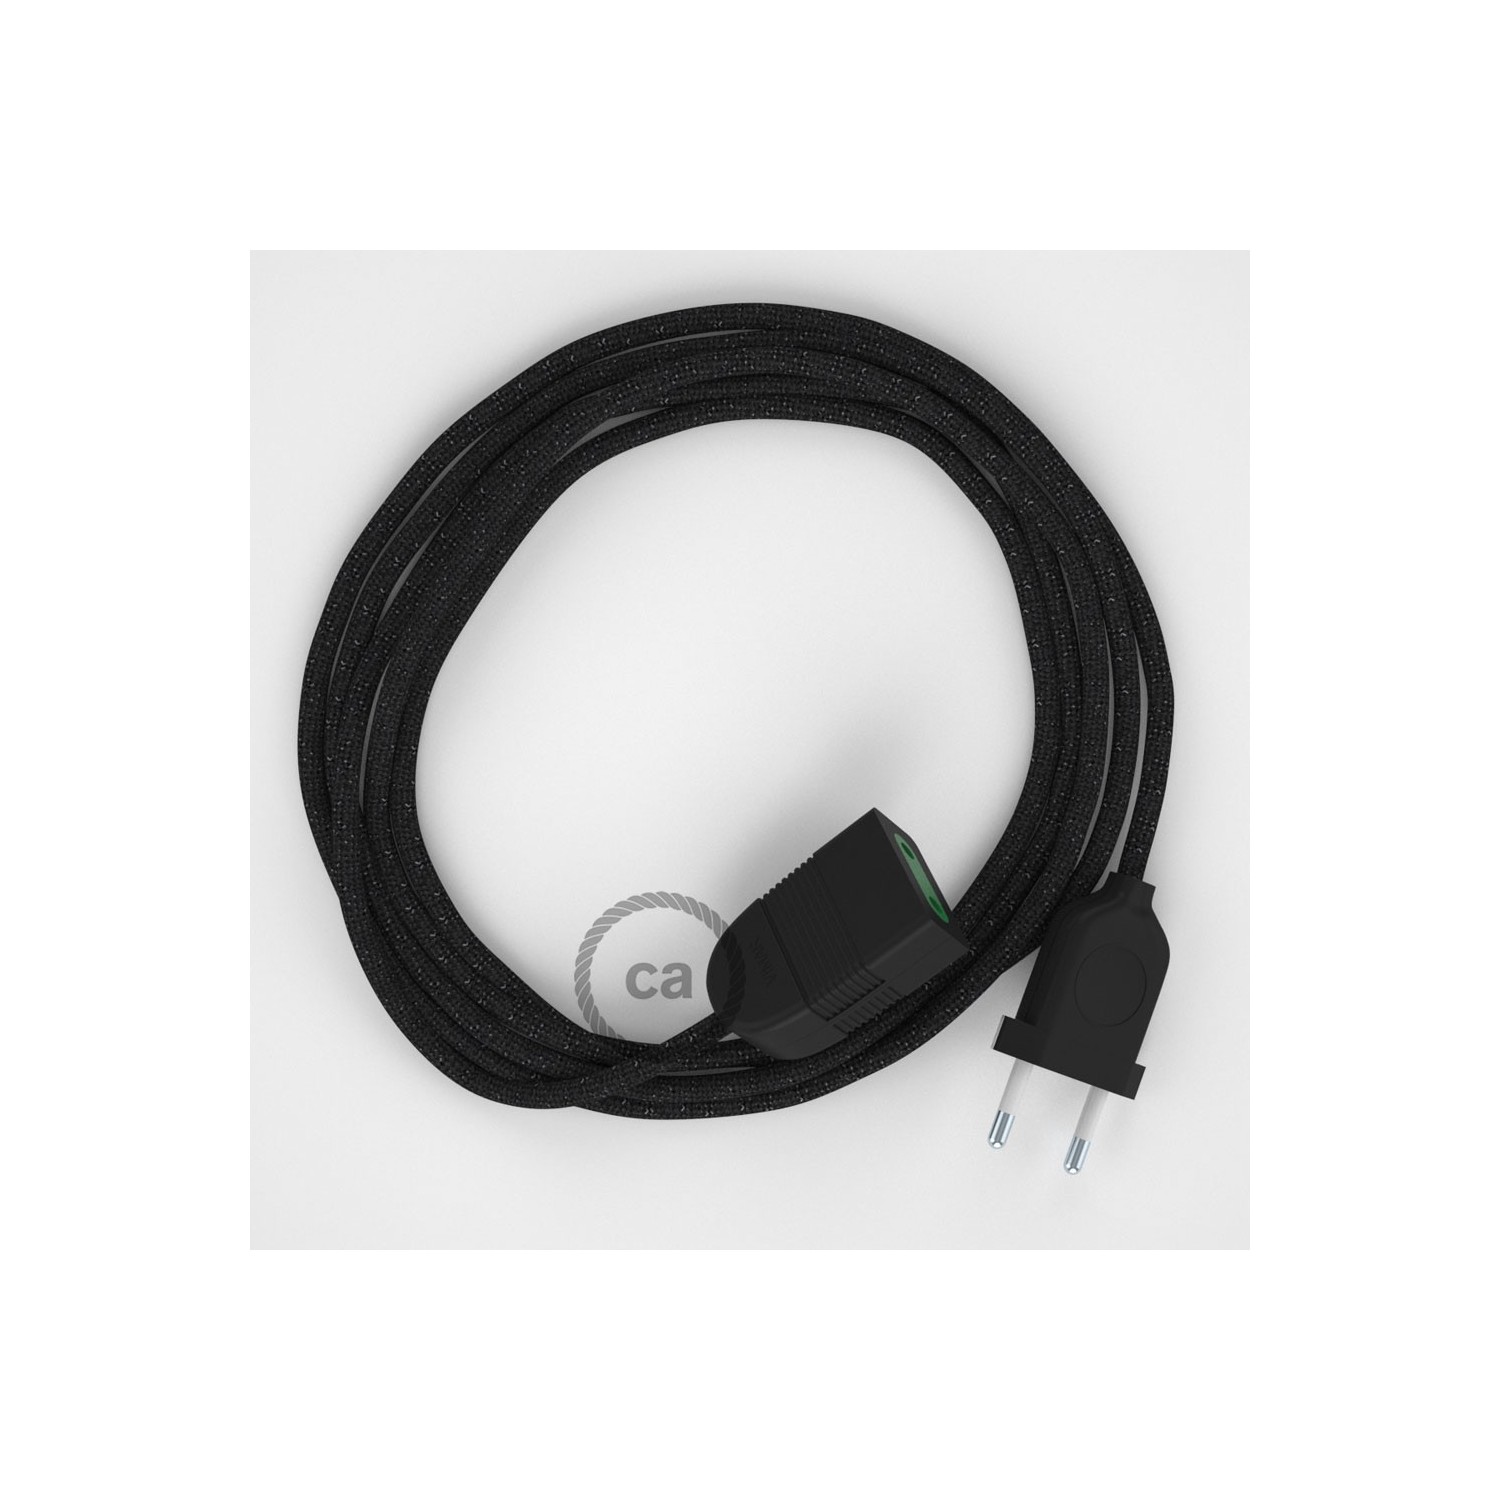 Rallonge électrique avec câble textile RL04 Effet Soie Paillettes Noir 2P 10A Made in Italy.